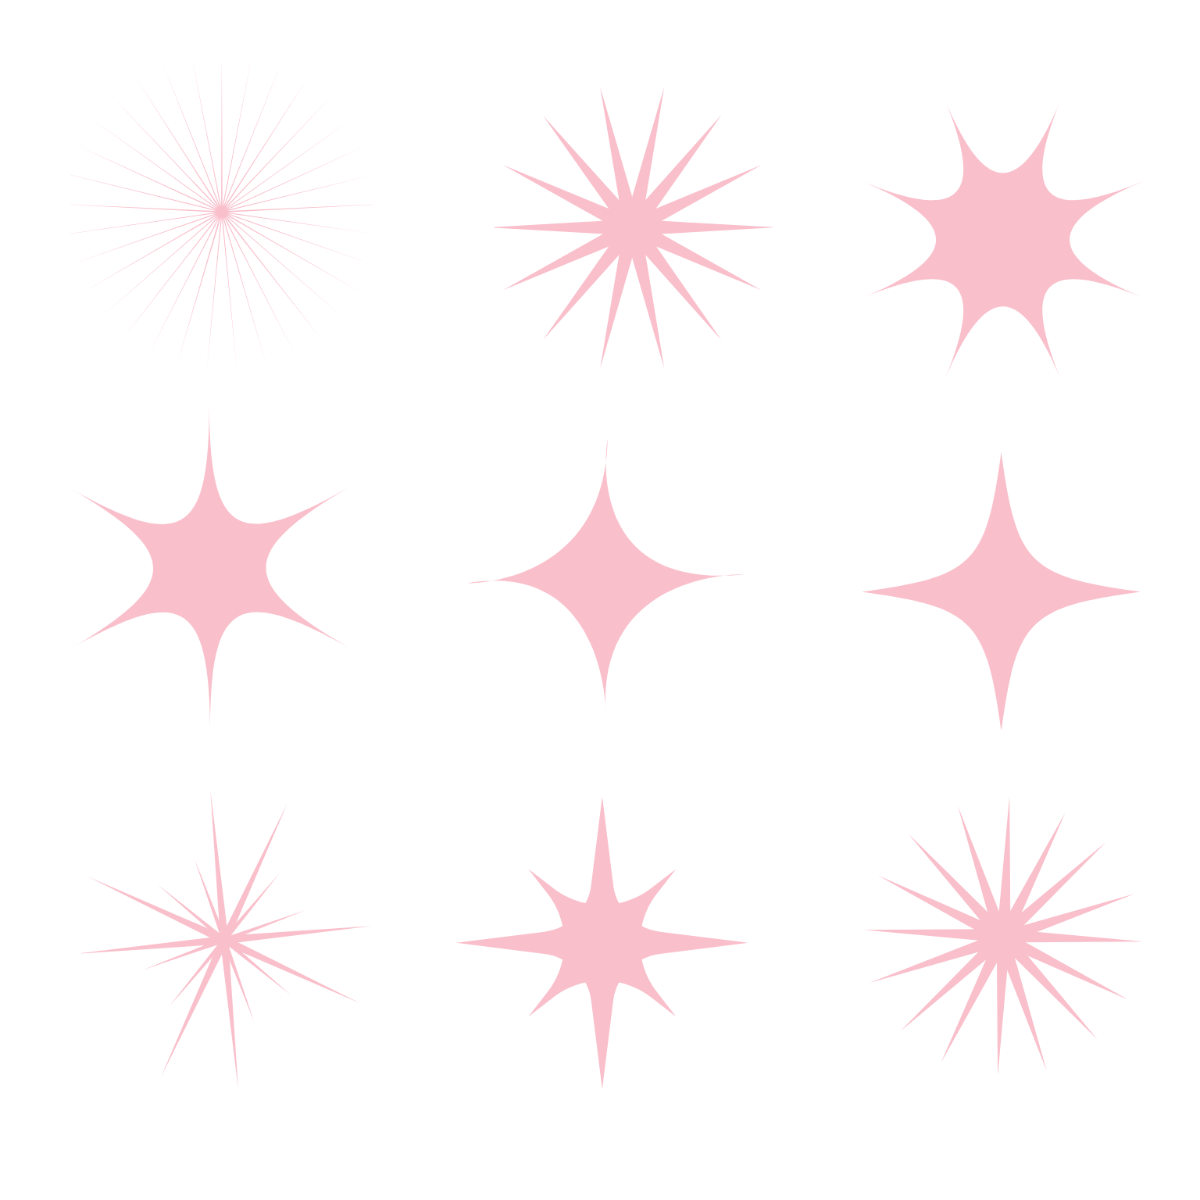 FREE Pink Sparkle Template - Download in PDF, Illustrator, EPS, SVG, JPG,  PNG